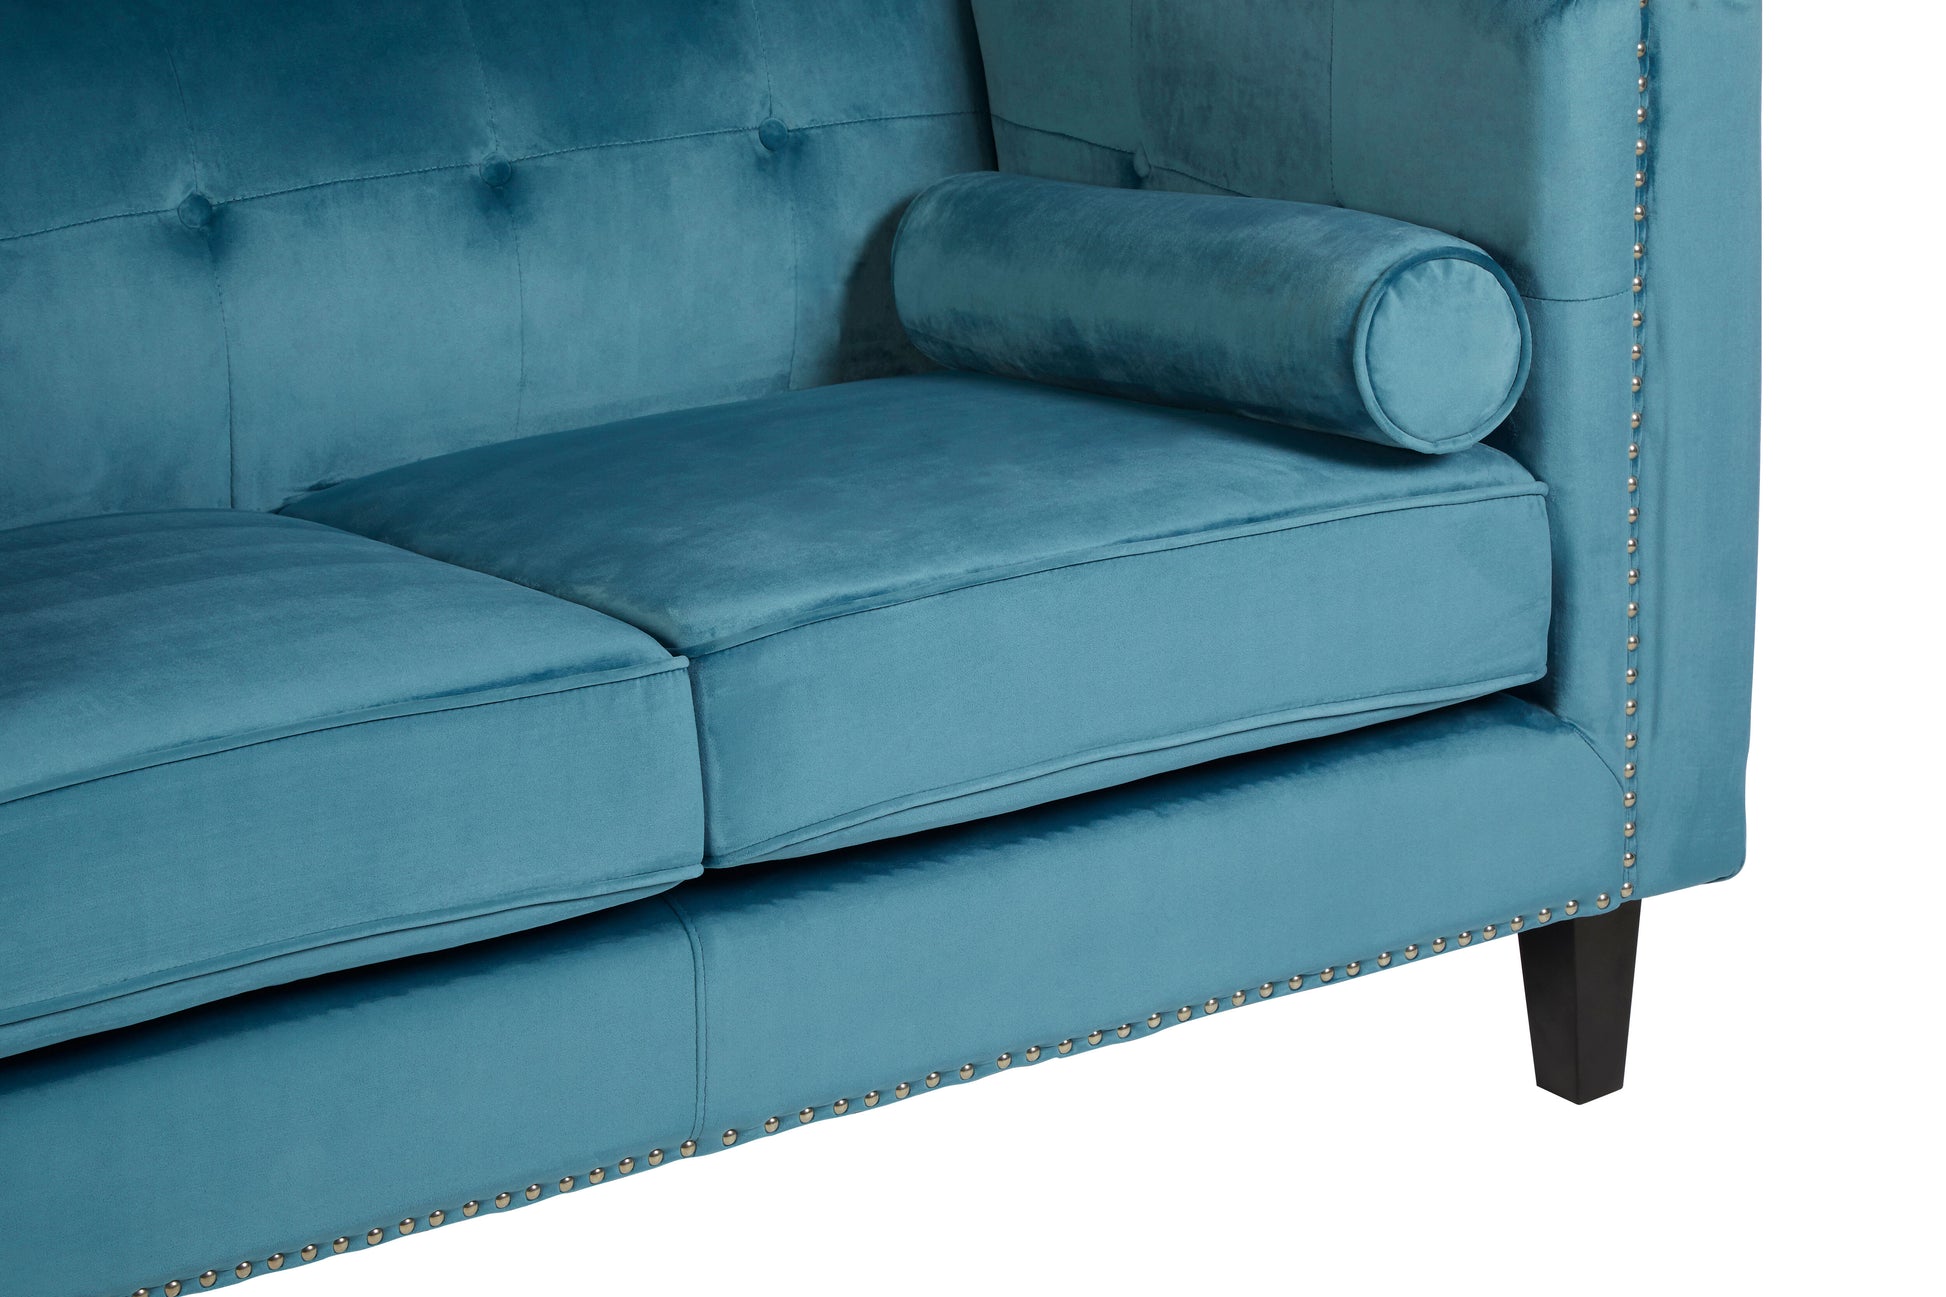 Felisa Upholstered Two Seater Velvet Sofa - NIXO Furniture.com